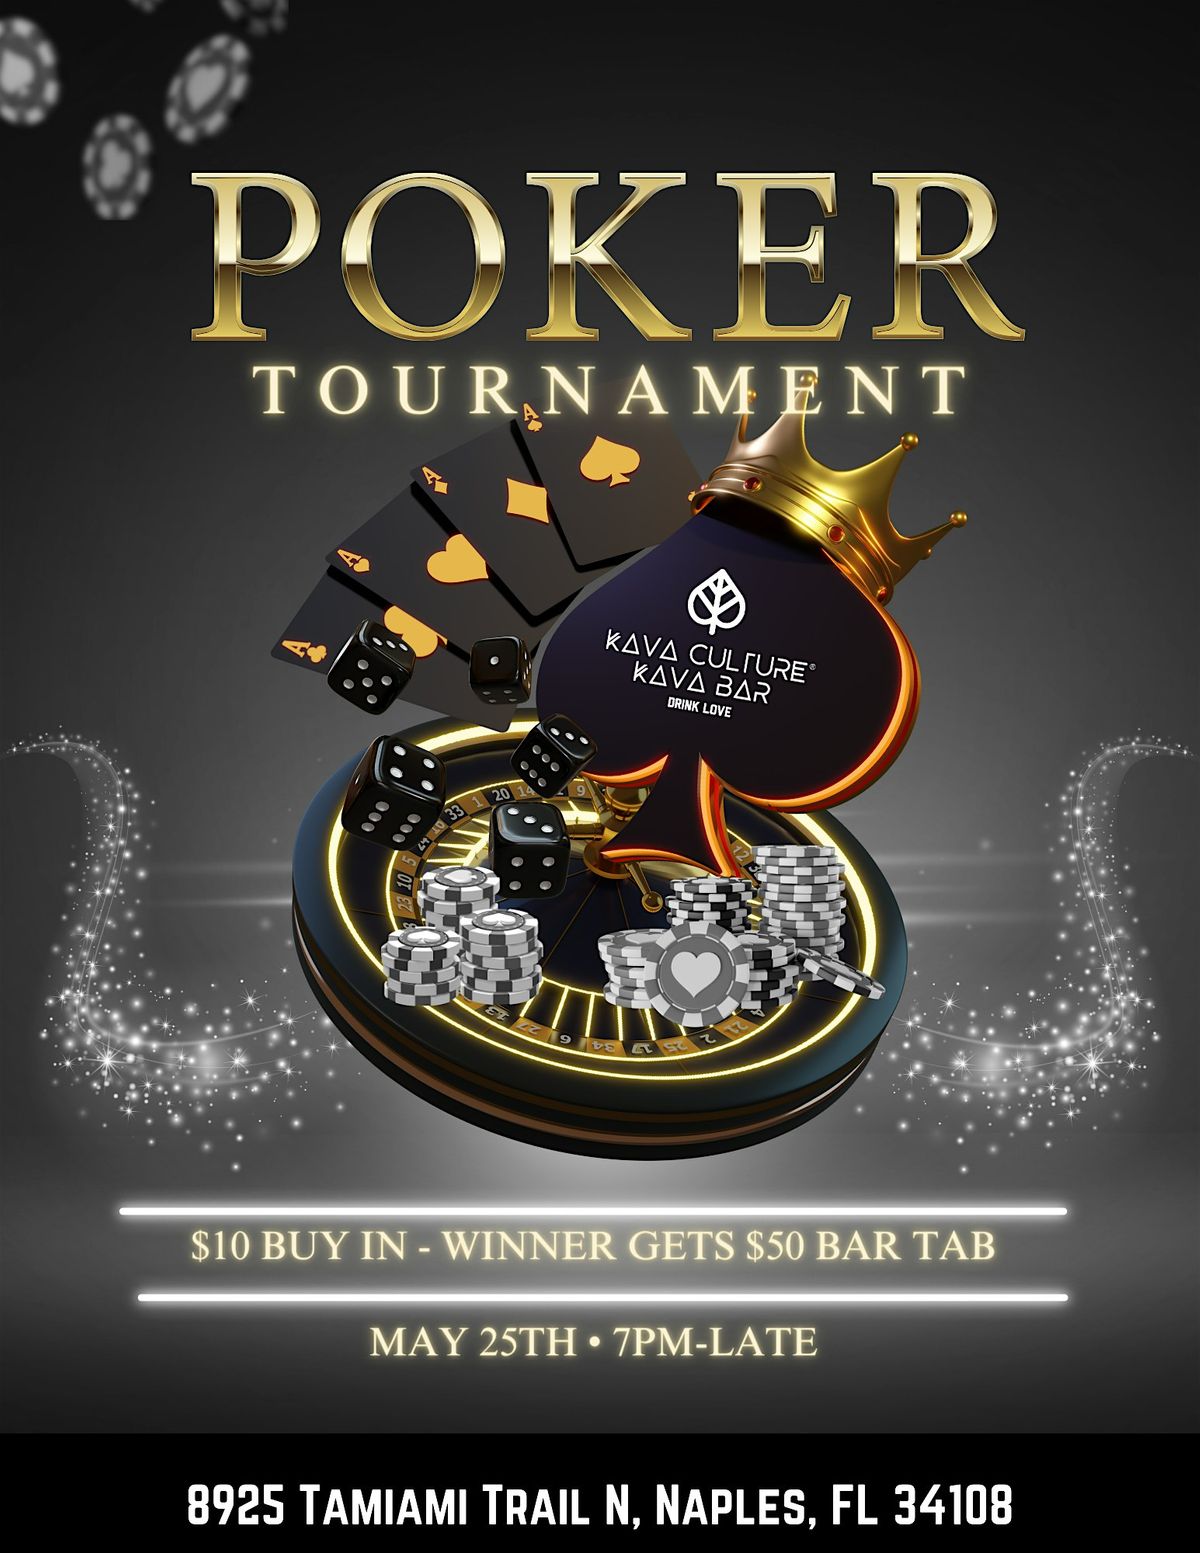 Amateur Poker Tournament